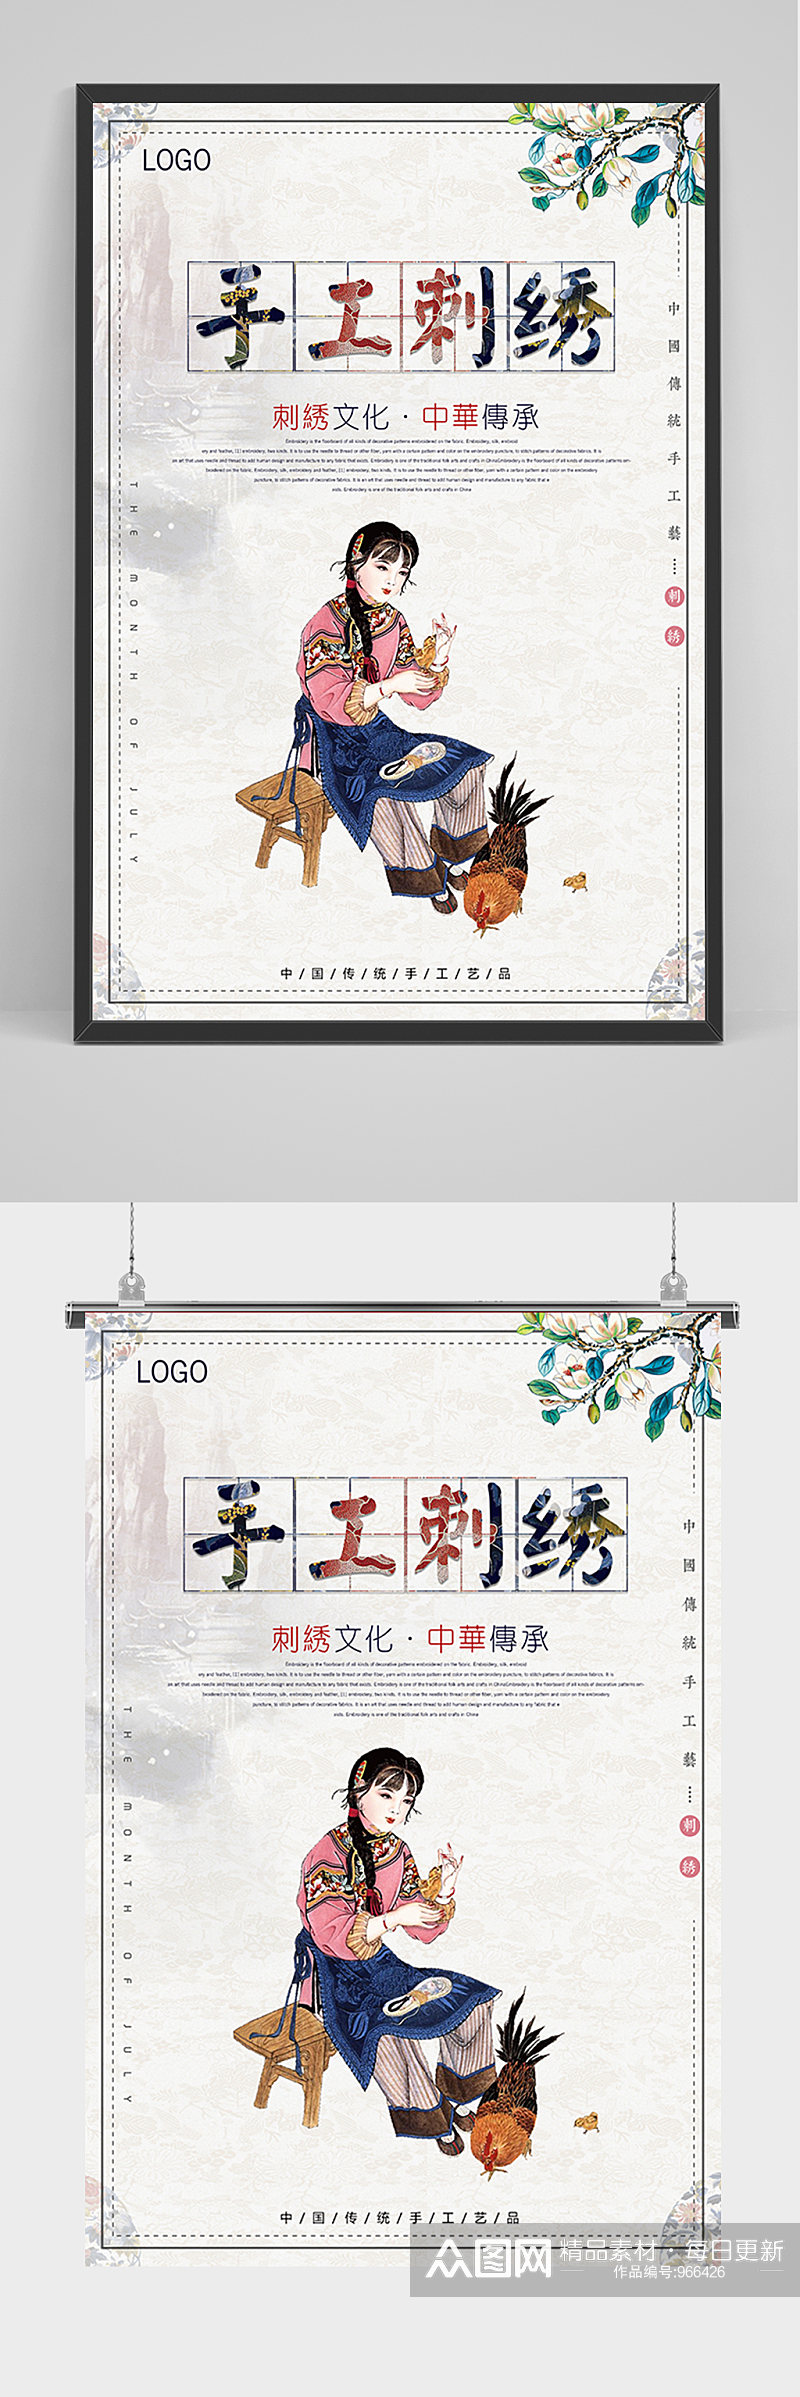 中国风手工刺绣海报素材